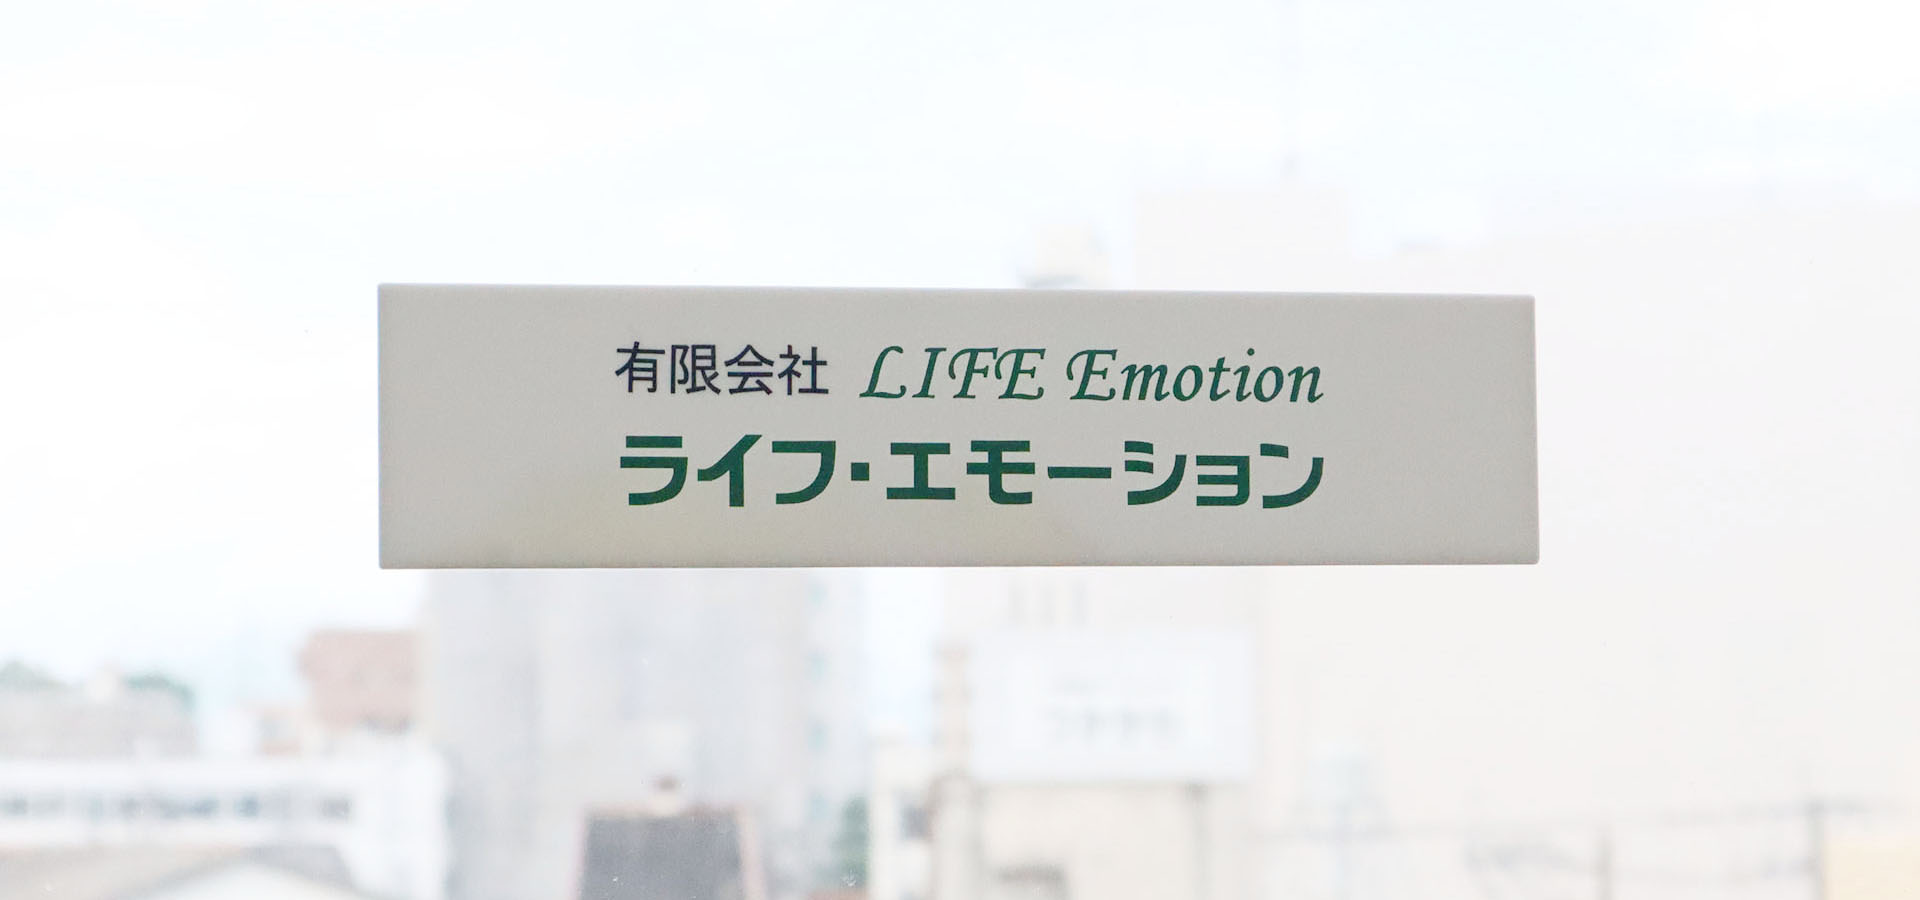 LIFE Emotion Inc.